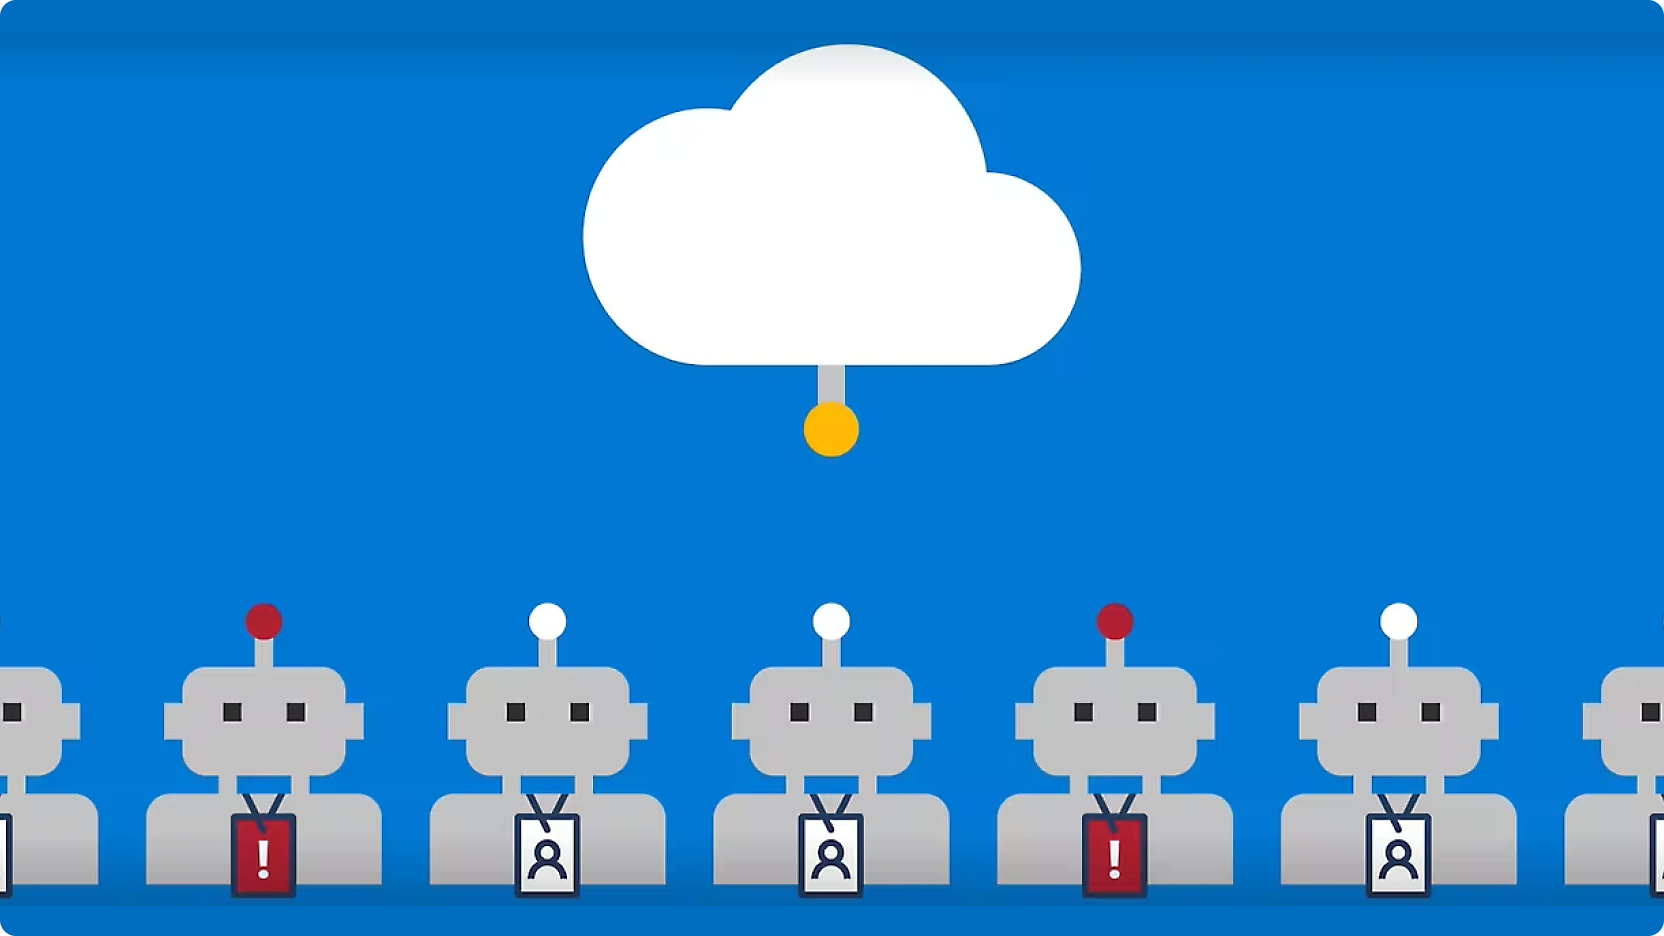 Grafik, welche Reihen von Robotern mit roten Tasten auf dem Kopf darstellt, die durch Linien mit einer zentralen Cloud verbunden sind